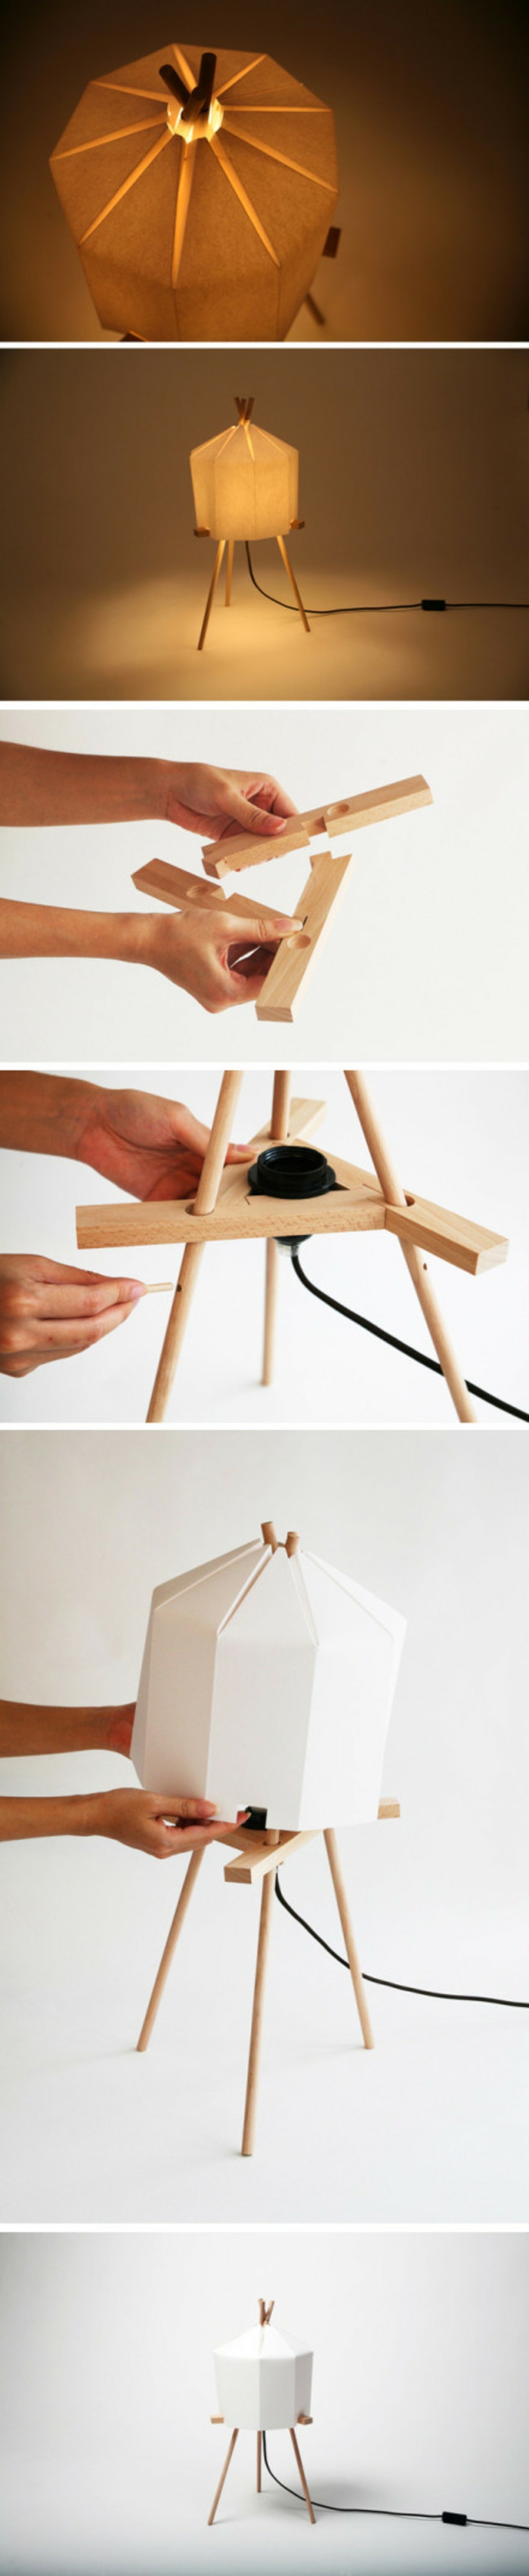 luminaire origami, comment fabriquer une lampe en papier, corde électrique, planchettes en bois